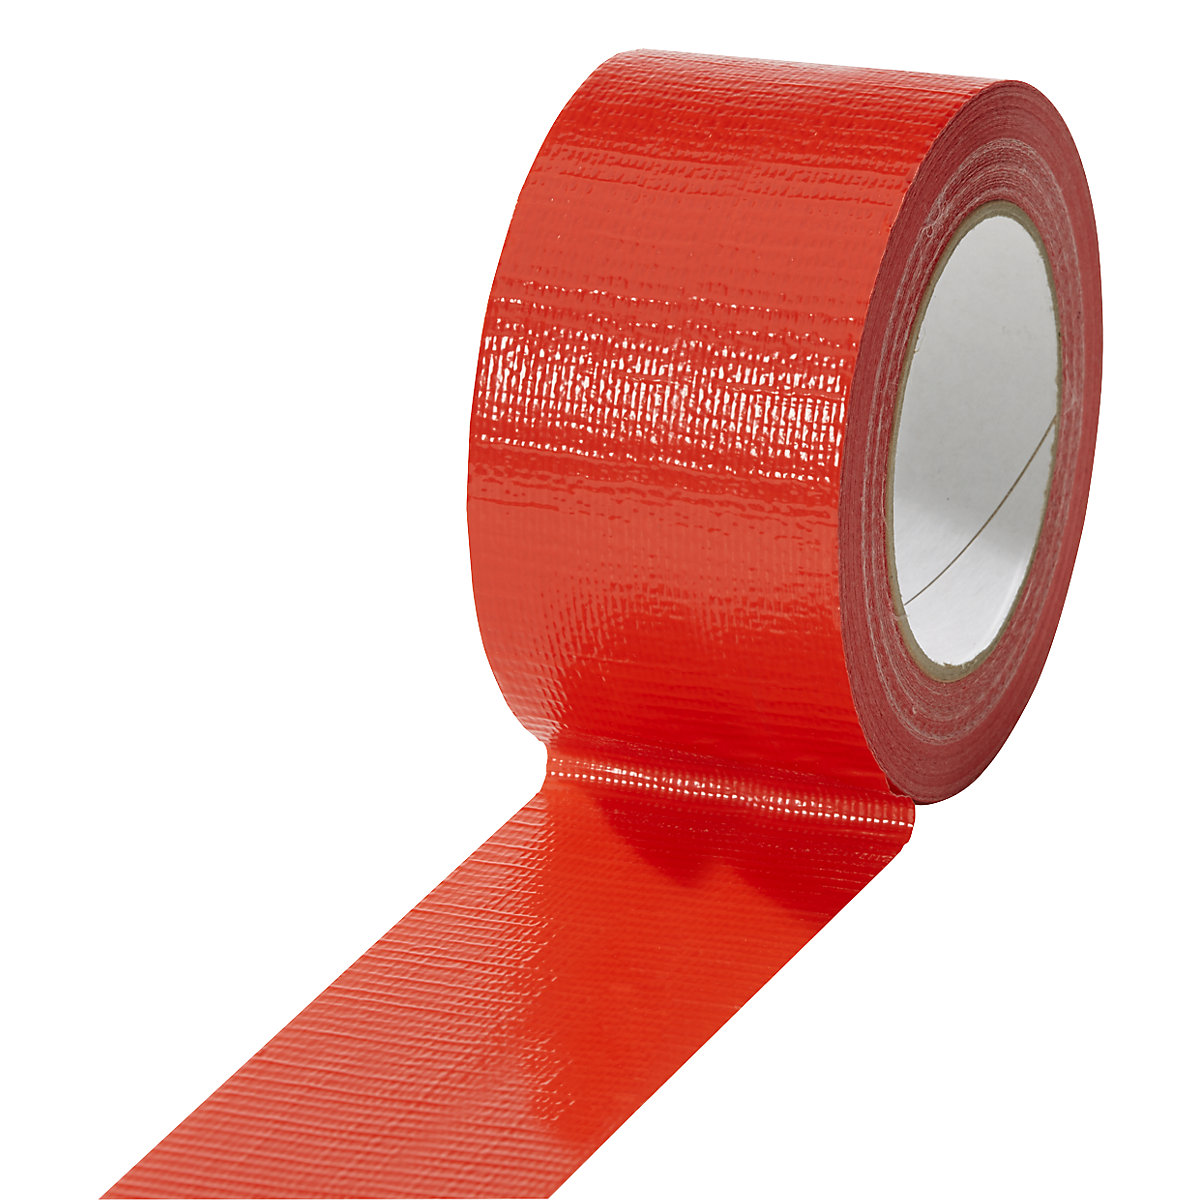 Taśma tkaninowa, w różnych kolorach, opak. 18 rolek, czerwona, szer. taśmy 50 mm-18